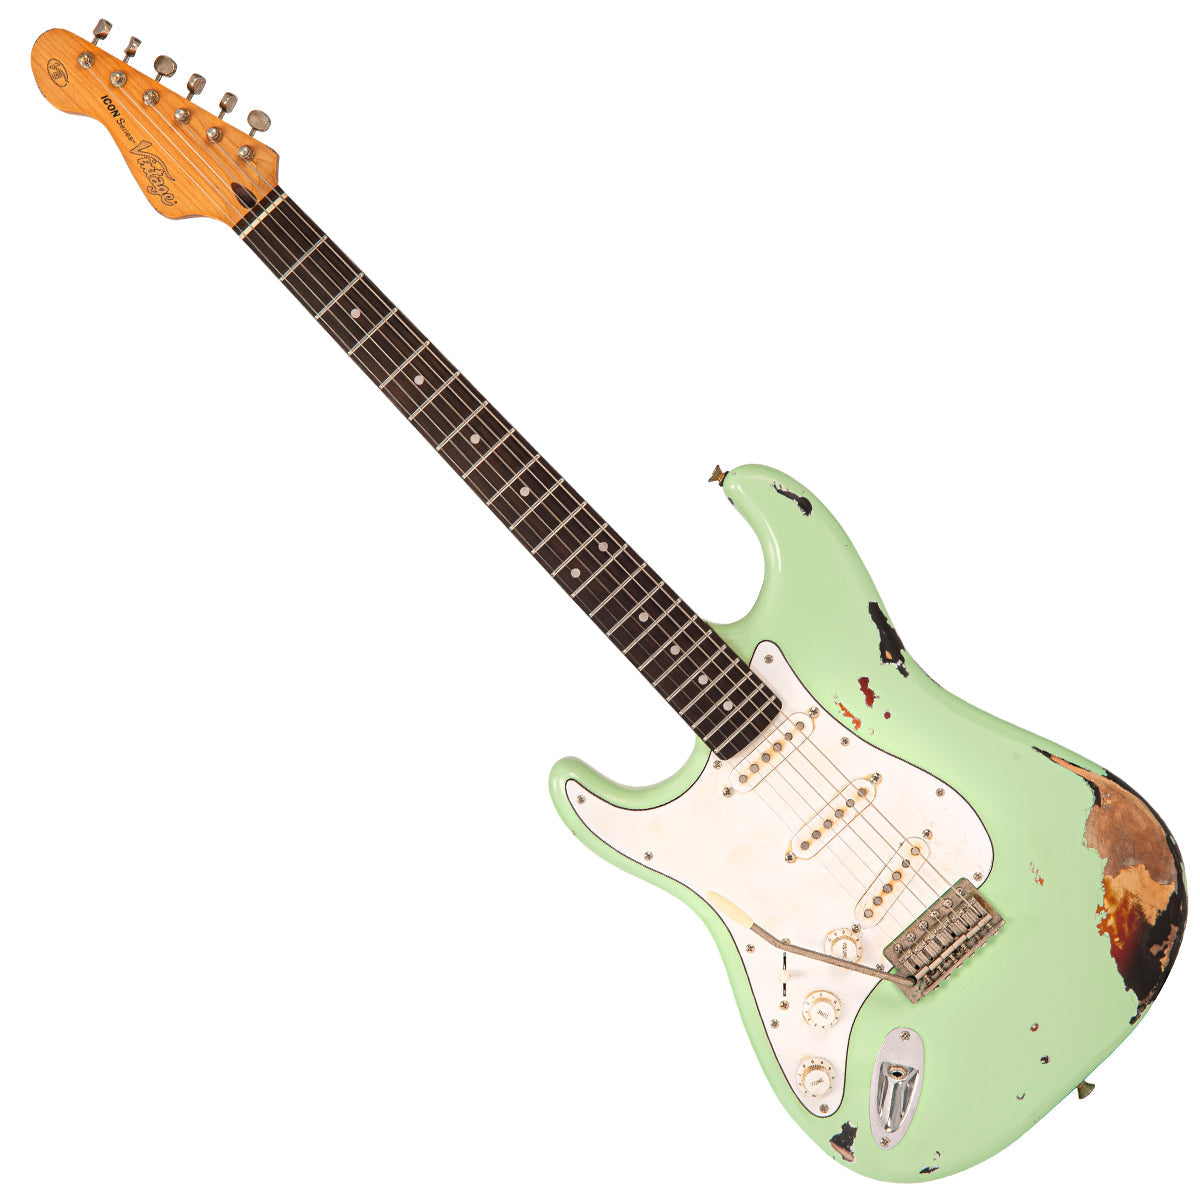 SOLD - Vintage V6 ProShop Unique ~ Surf Green over Sunburst ~ Left Handed, Electric Guitars for sale at Richards Guitars.